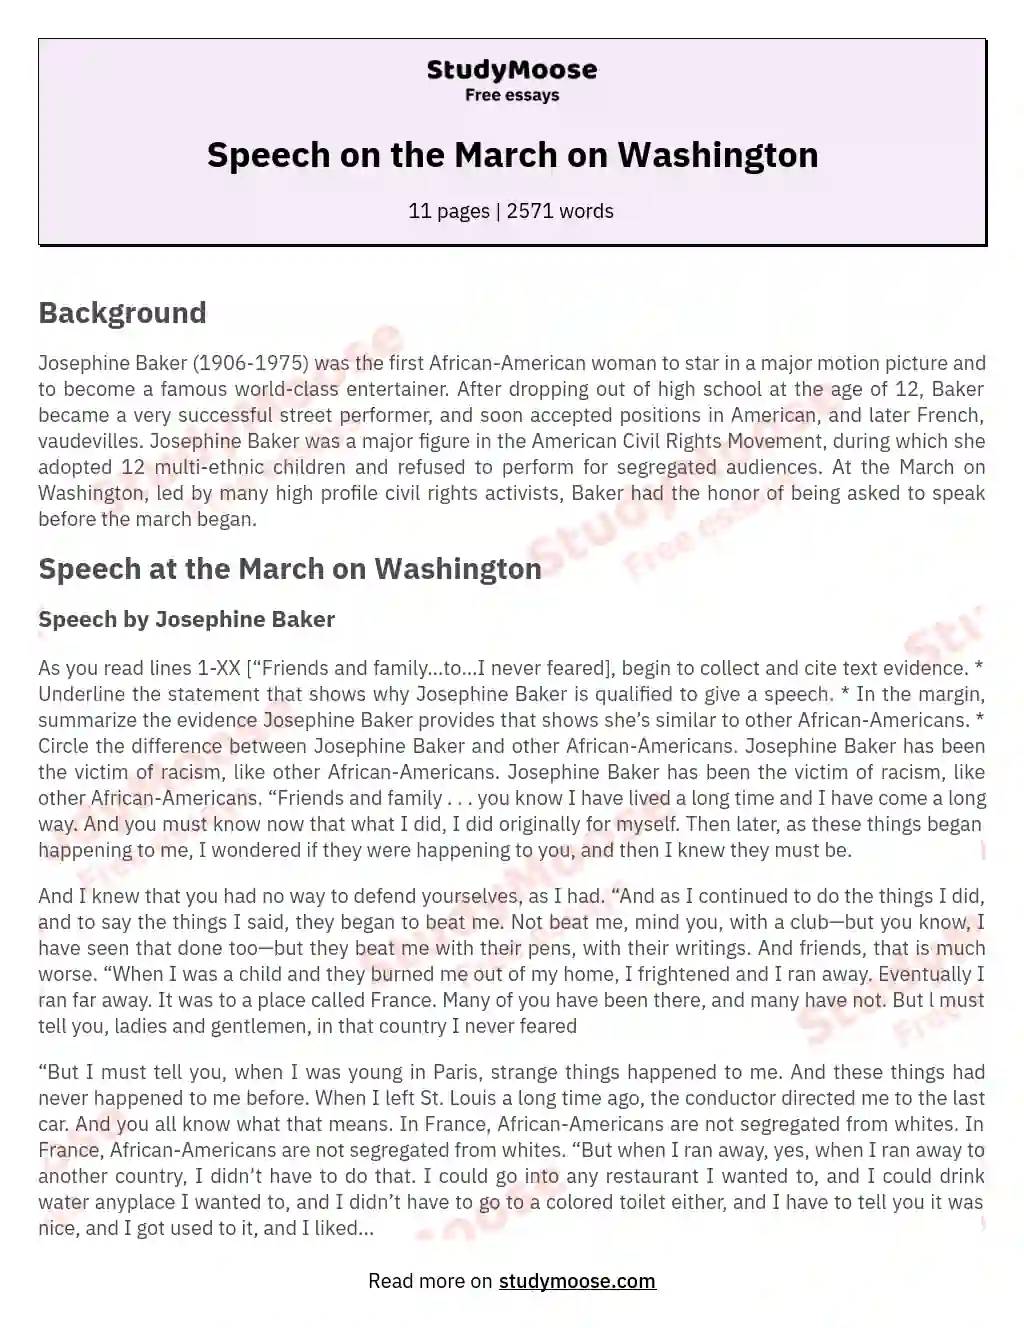 Speech on the March on Washington essay